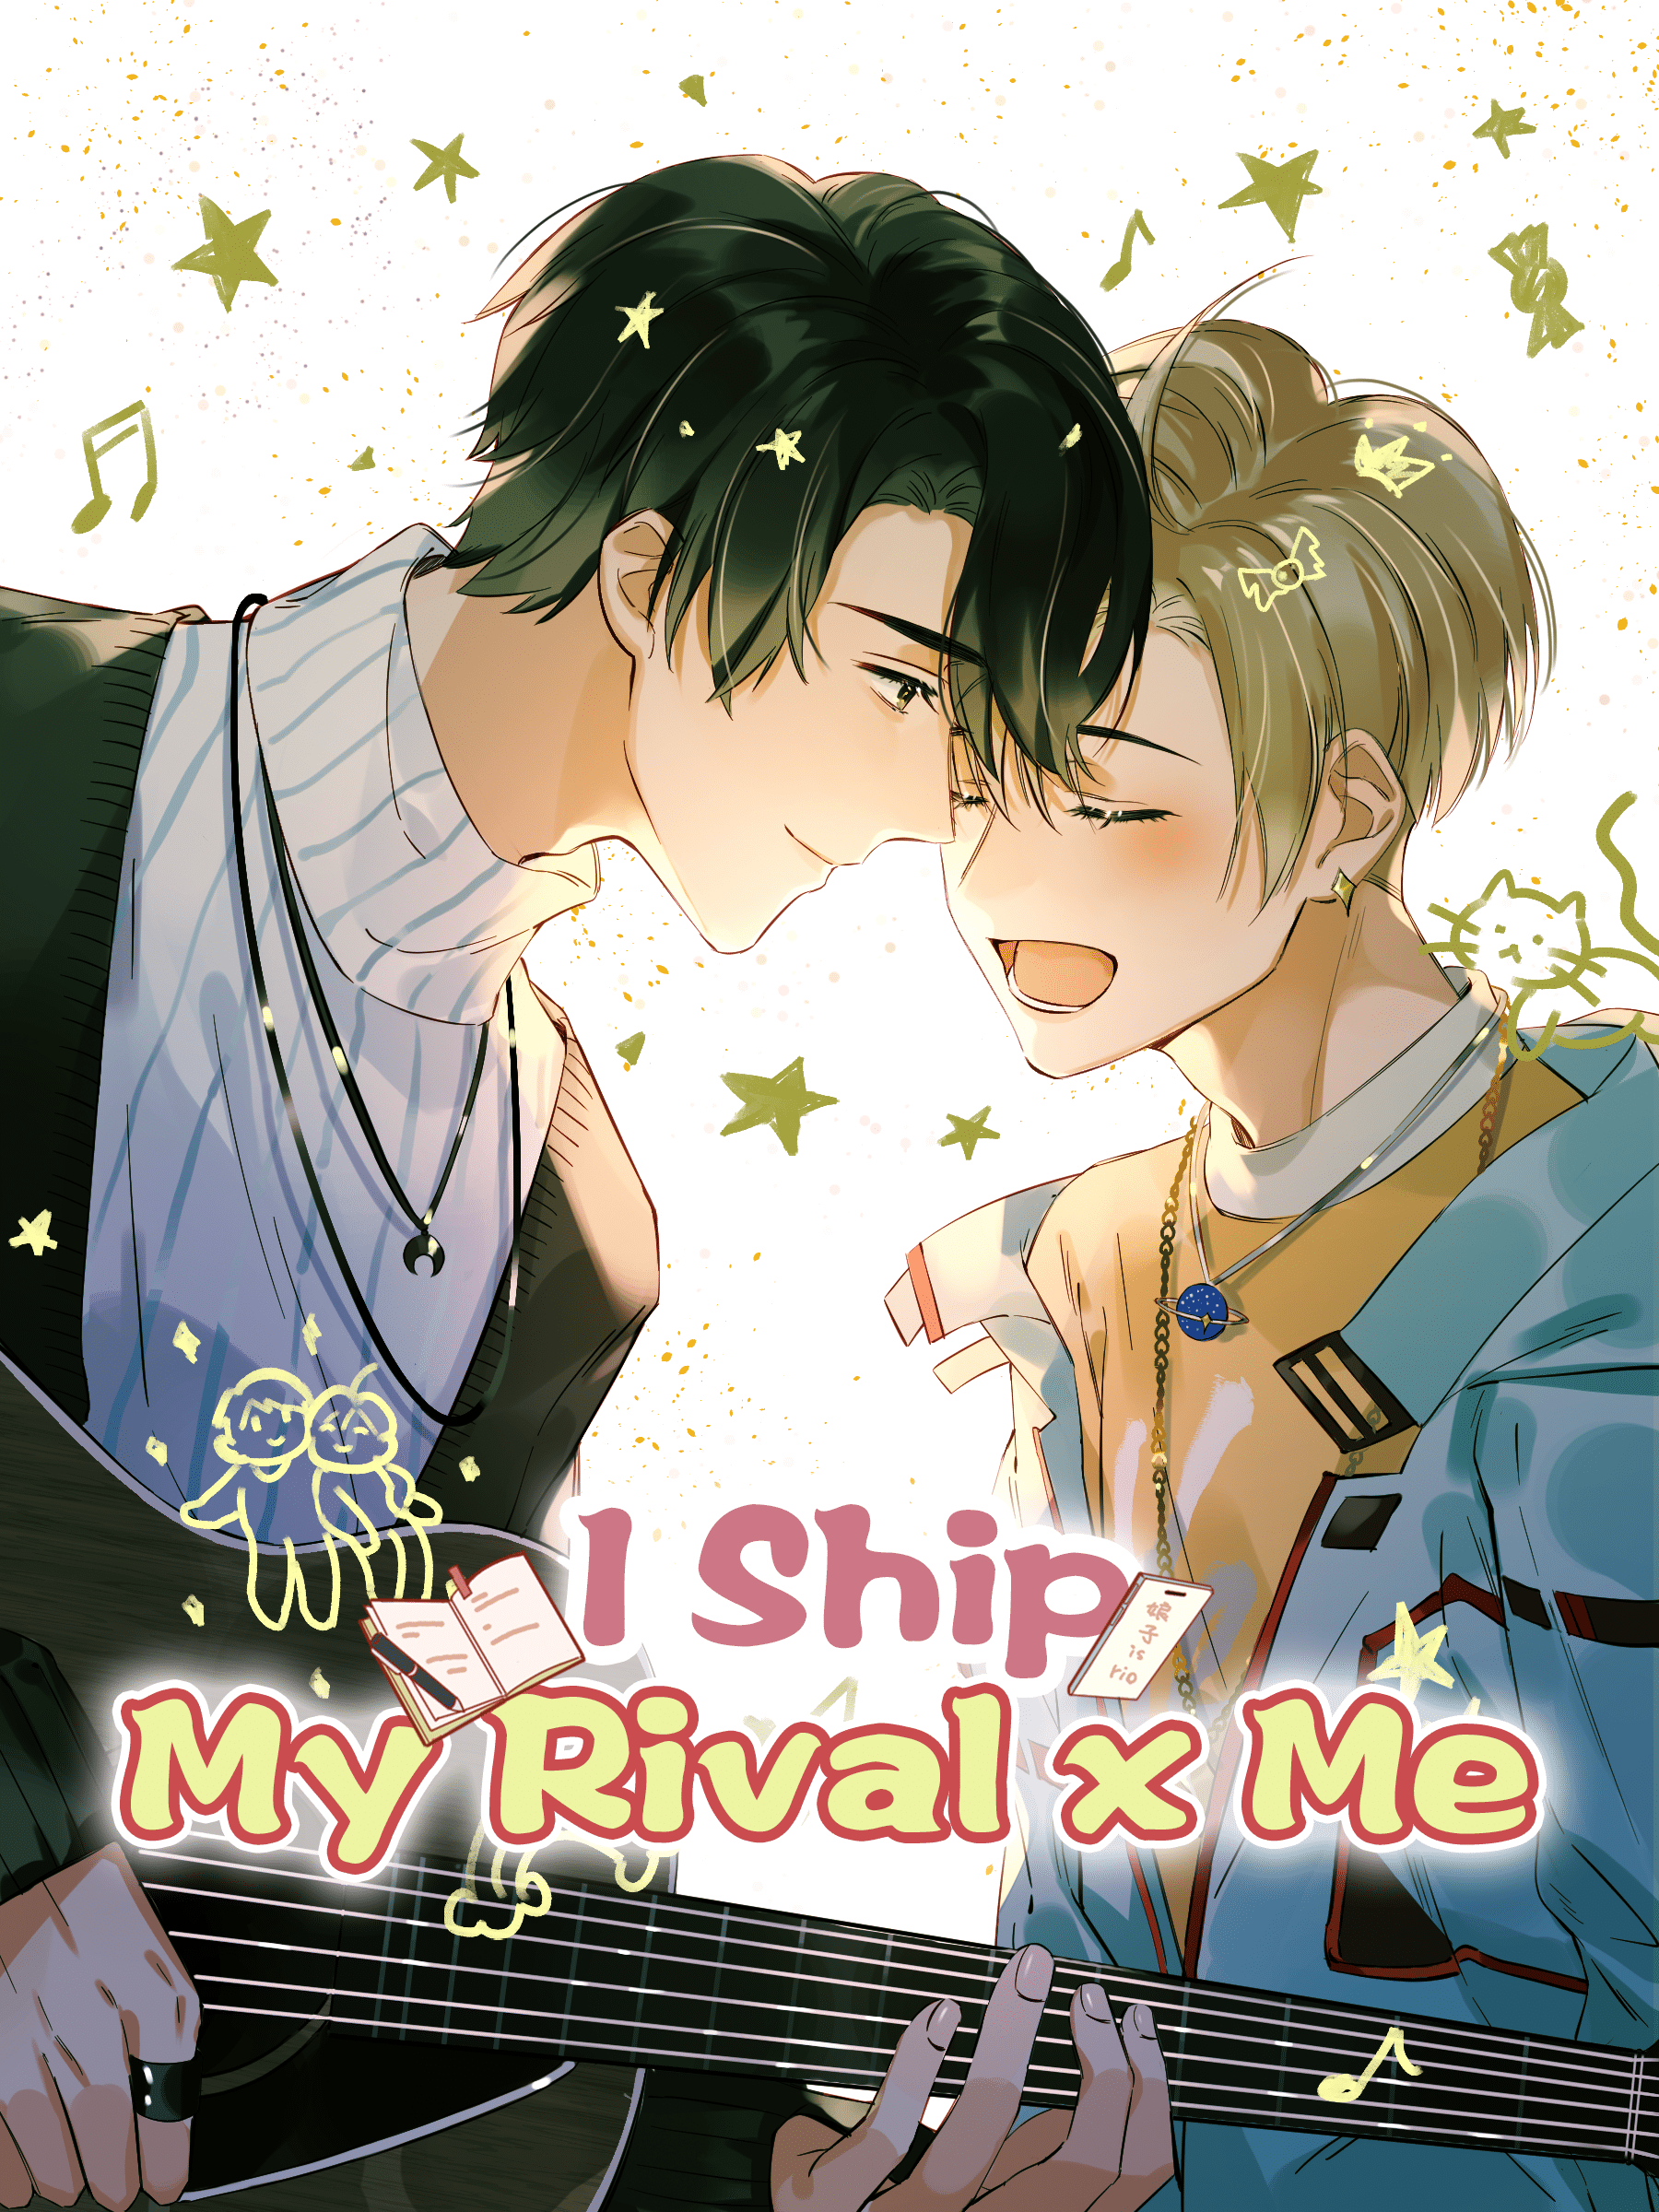 I Ship My Rival x Me – ปฏิบัติการเปลี่ยนคู่แข่งมาเป็นคู่จิ้น ตอนที่ 0